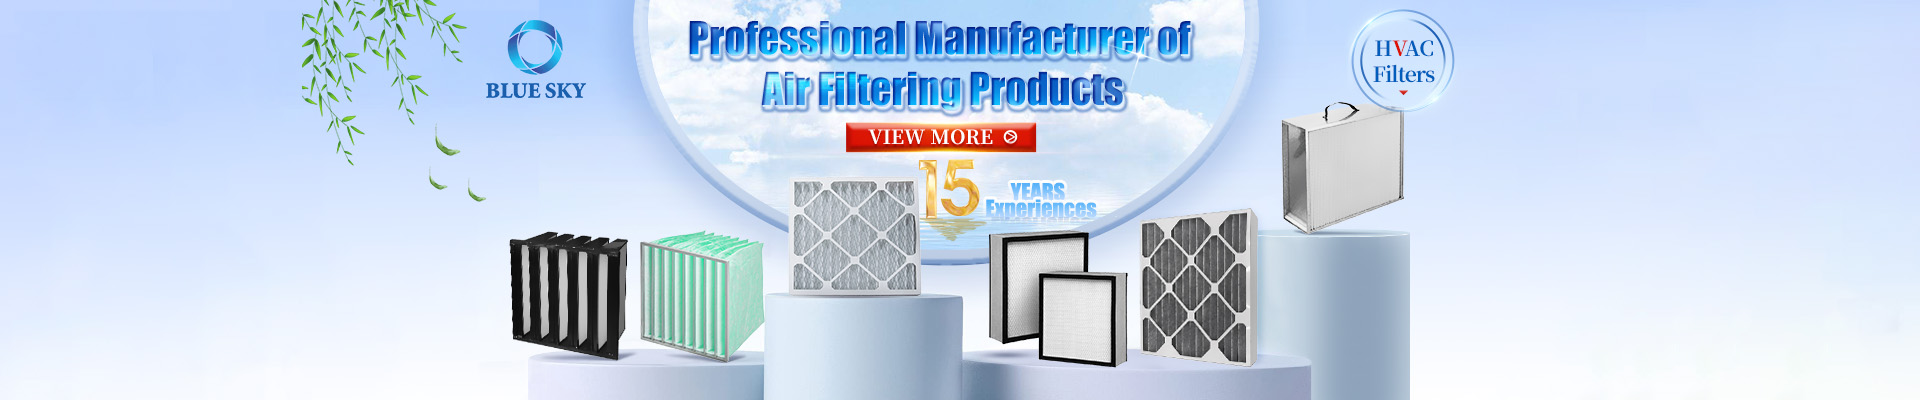 Blue Sky Fabricante profesional de productos de filtrado de aire